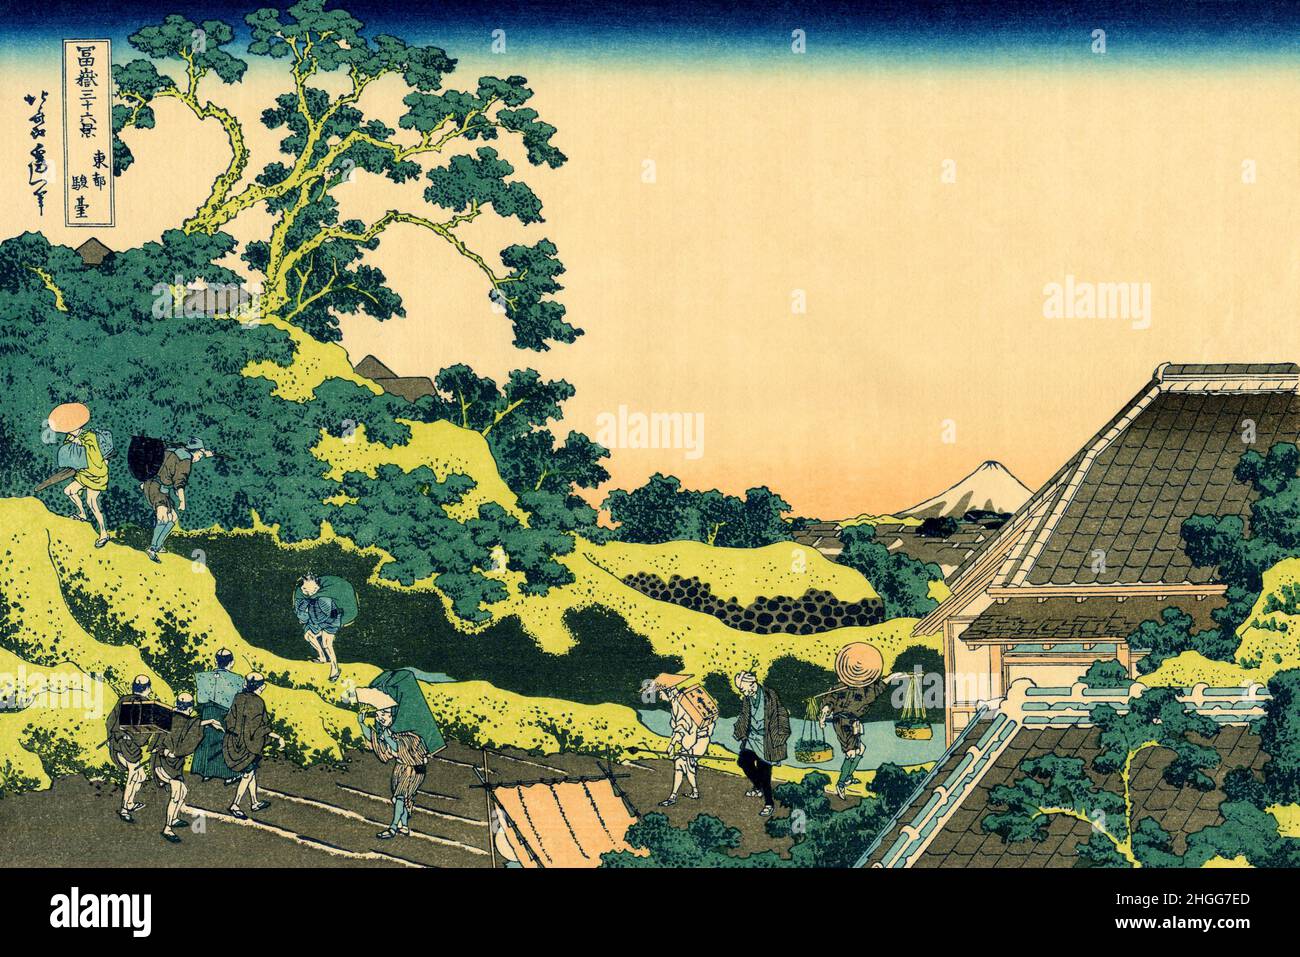 Japan: ‘Sundai, Edo’, auch bekannt als ‘Fuji vom Mishima Pass aus gesehen’. Ukiyo-e Holzschnitt aus der Serie '36 Ansichten des Fuji' von Katsushika Hokusai (31. Oktober 1760 - 10. Mai 1849), c. 1830. Der Fuji ist mit 3.776,24 m (12.389 ft) der höchste Berg Japans. Der Fuji, ein aktiver Stratovulkan, der zuletzt 1707–08 ausbrach, liegt etwa 100 km südwestlich von Tokio. Der außergewöhnlich symmetrische Kegel des Fuji ist ein bekanntes Symbol und Symbol Japans und wird häufig in Kunst und Fotografien dargestellt. Es ist eines der ‘drei Heiligen Berge’ Japans, zusammen mit dem Berg Tate und dem Berg Haku. Stockfoto